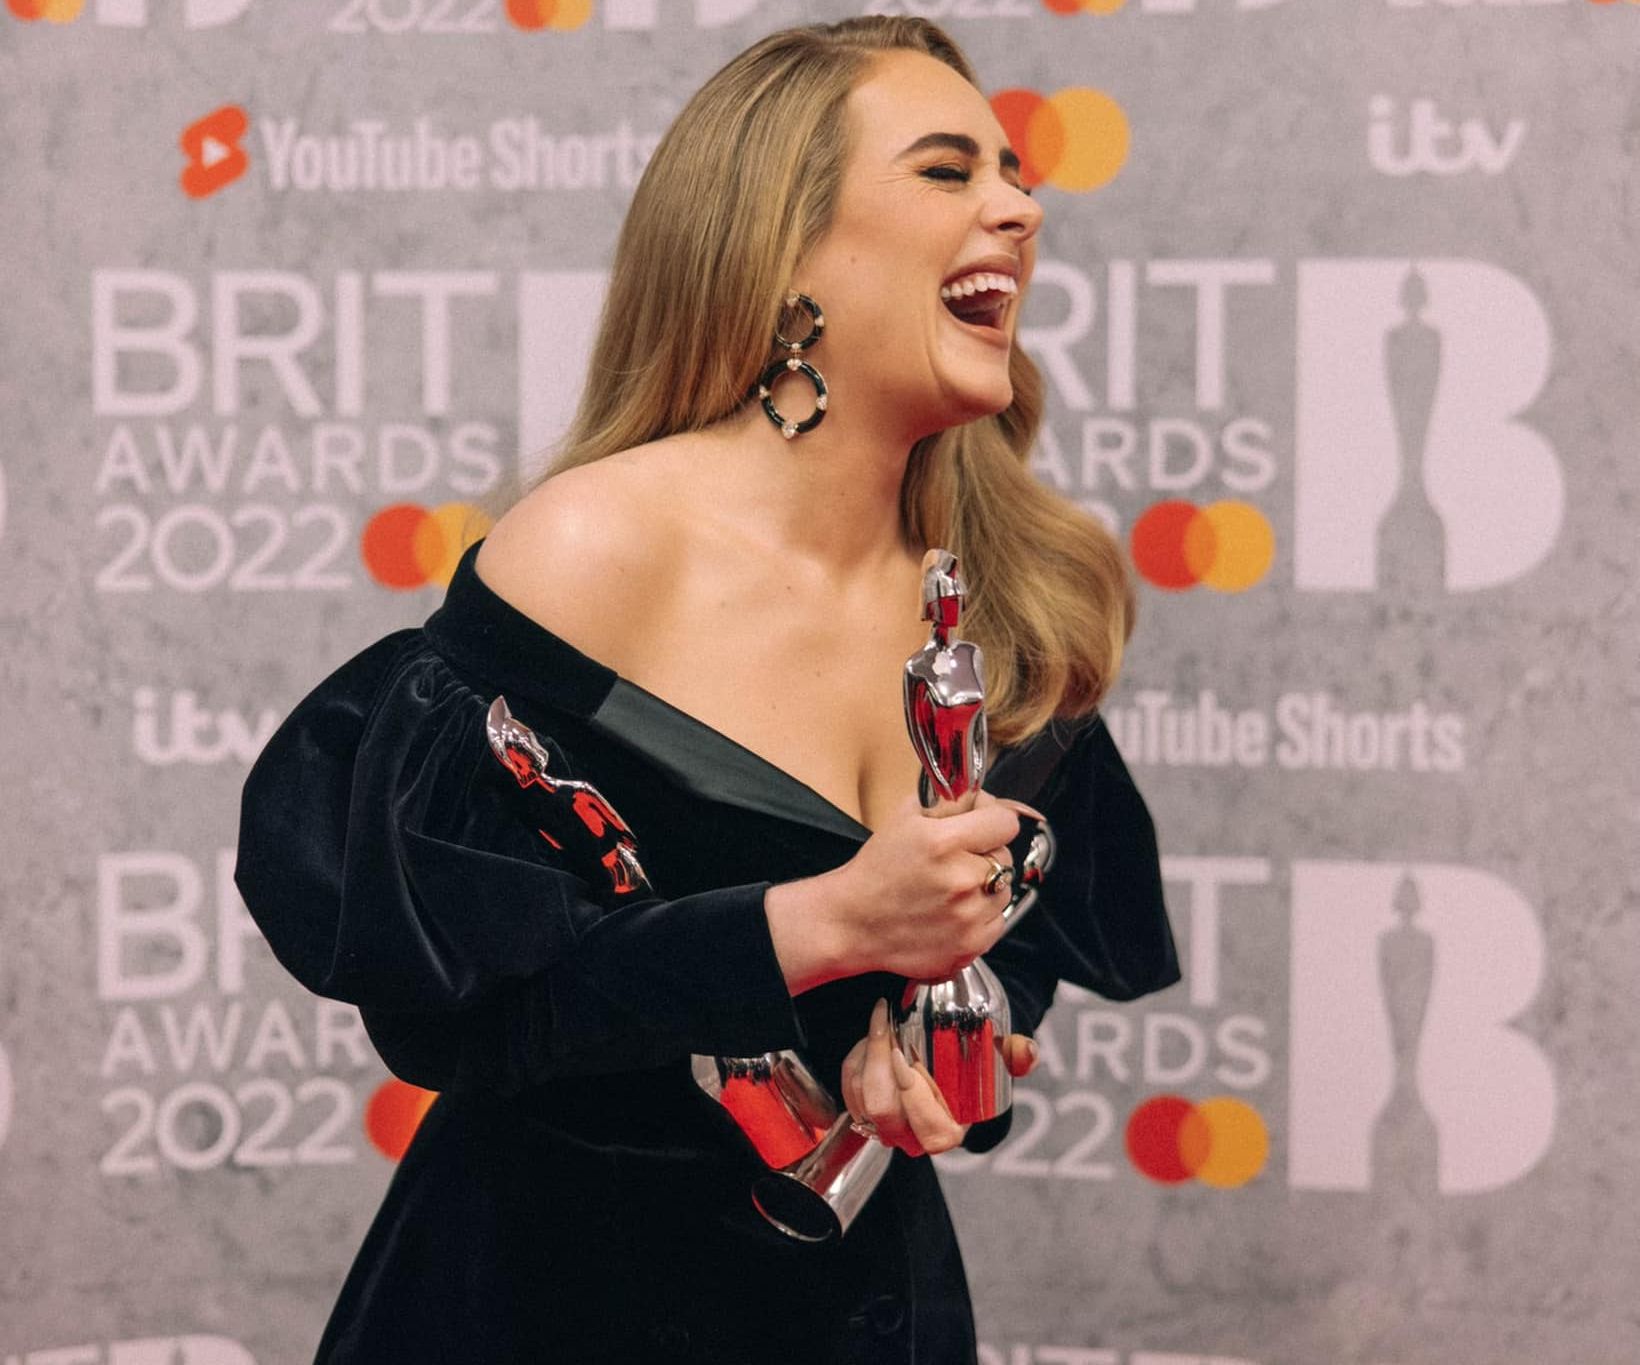 Співачка Адель перемогла у трьох номінаціях премії Brit Awards, фото